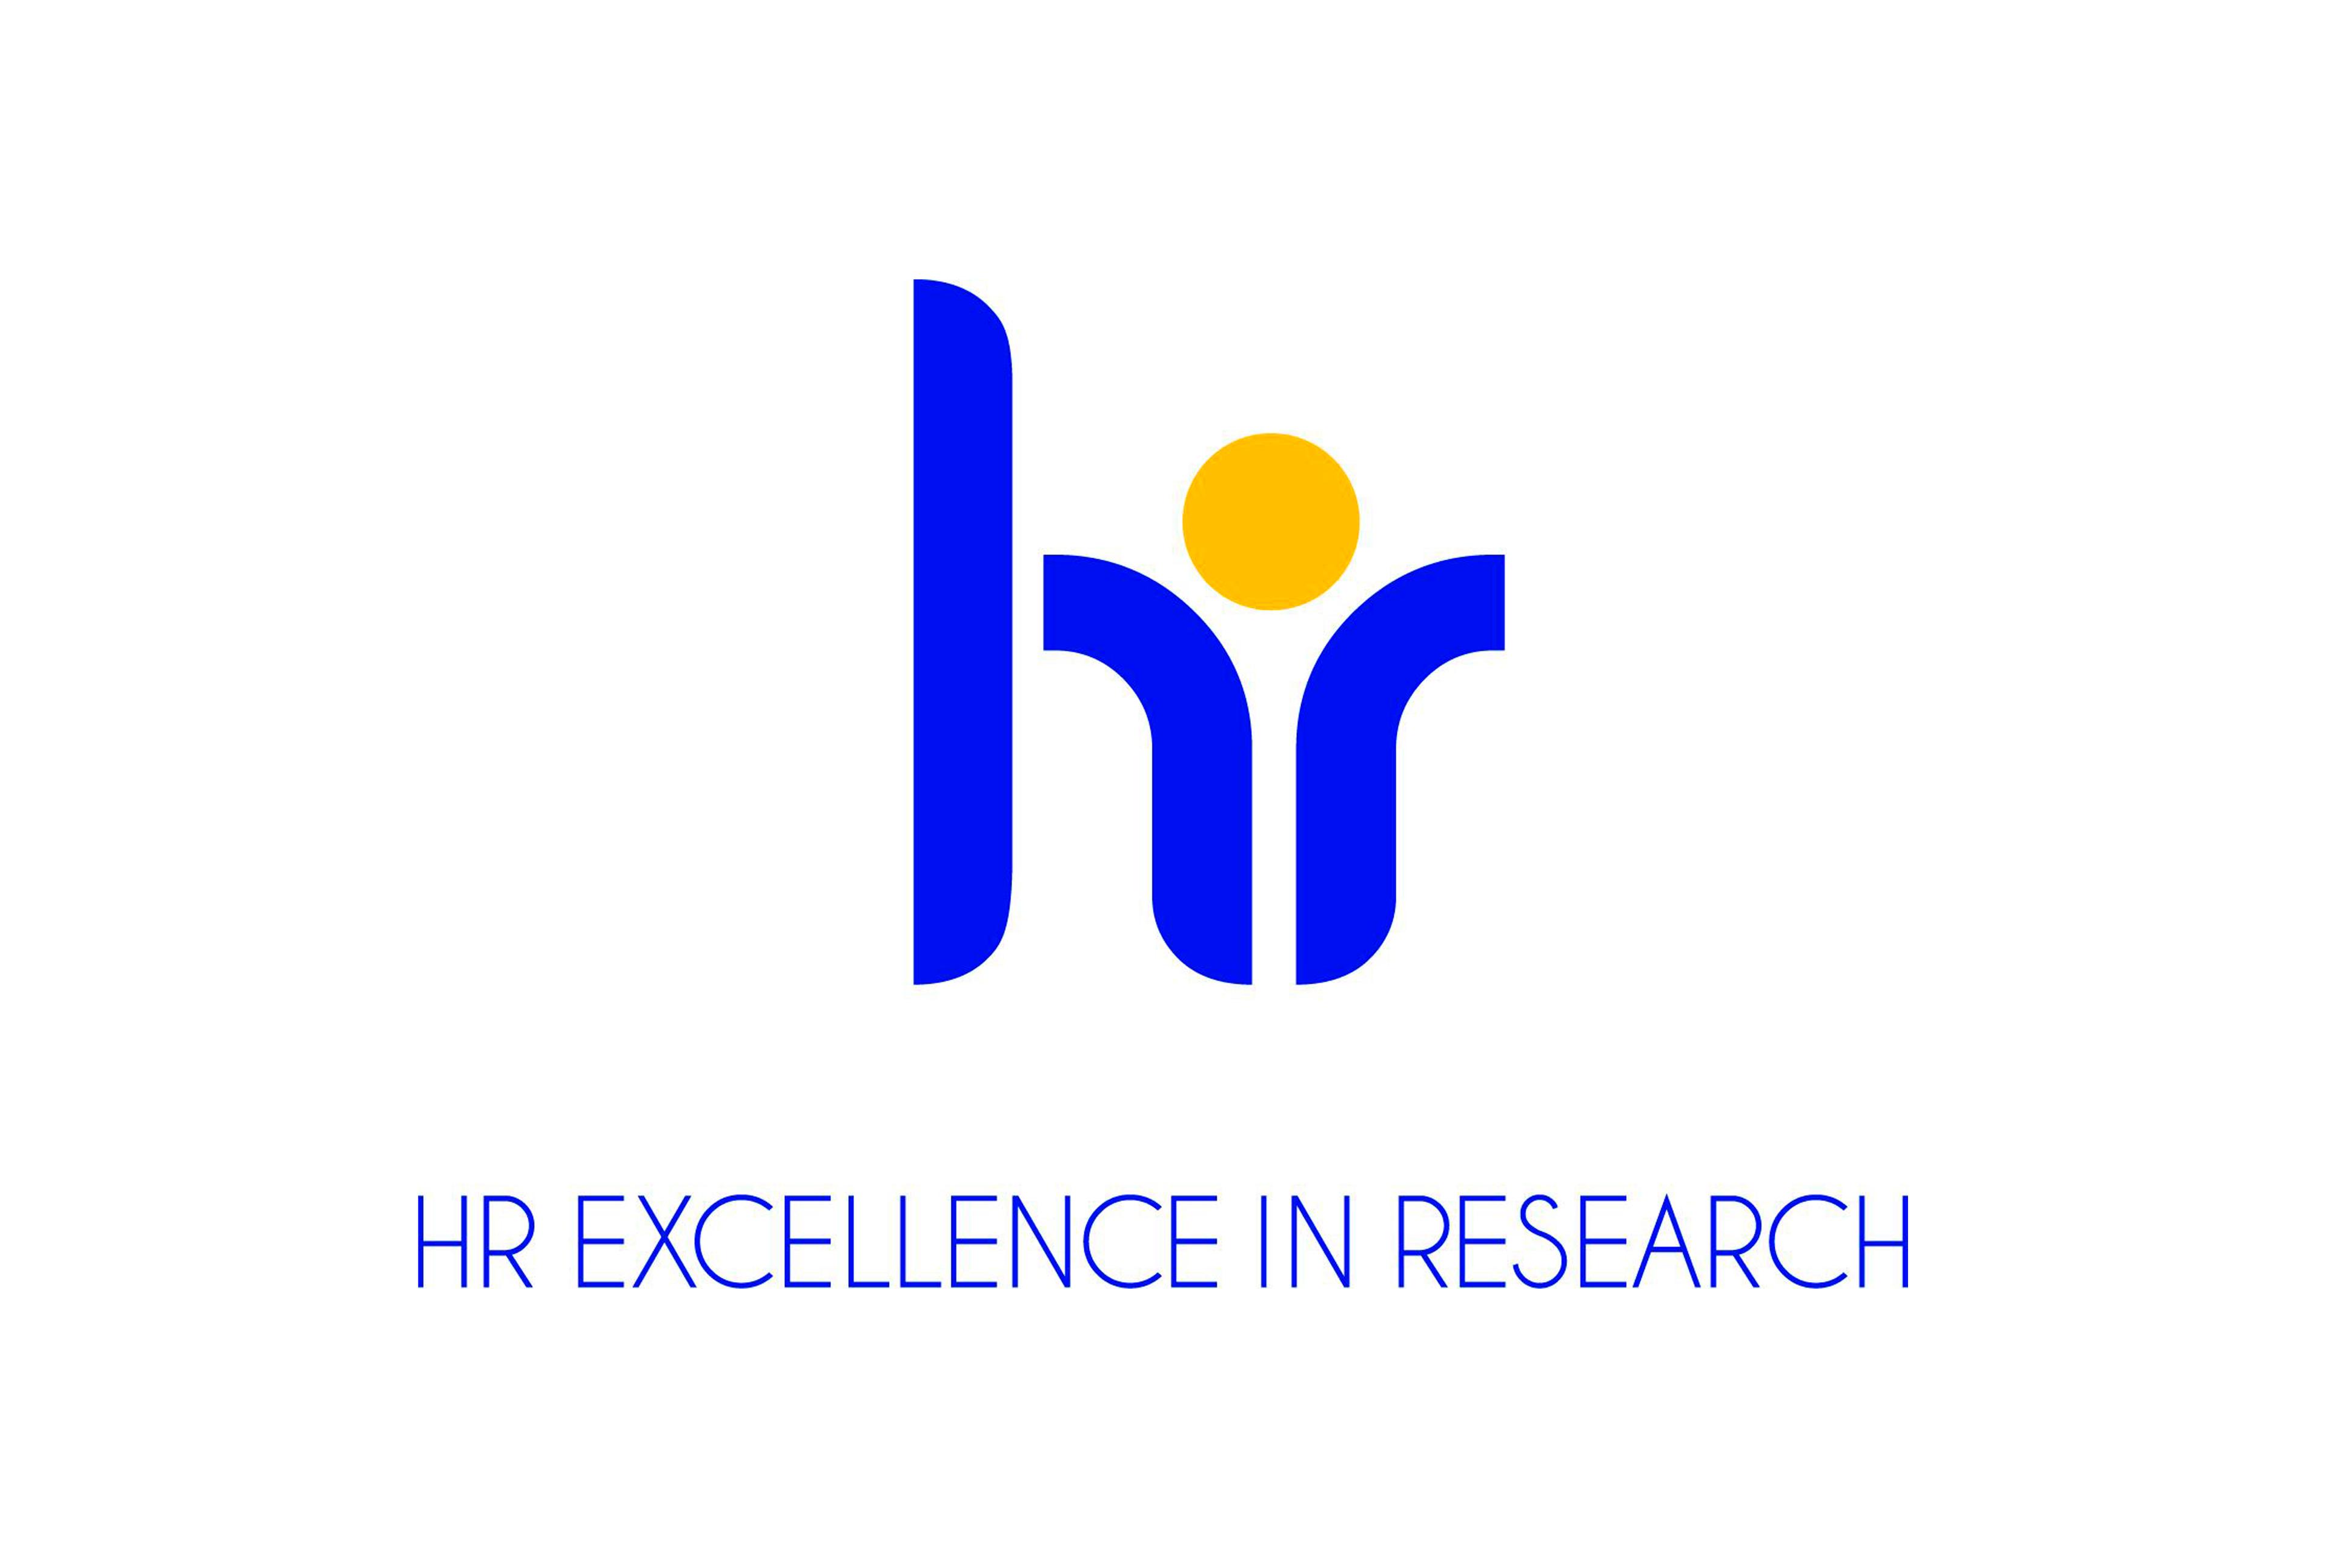 Blanquerna inicia el procés per obtenir el segell de qualitat HR Excellence in Research